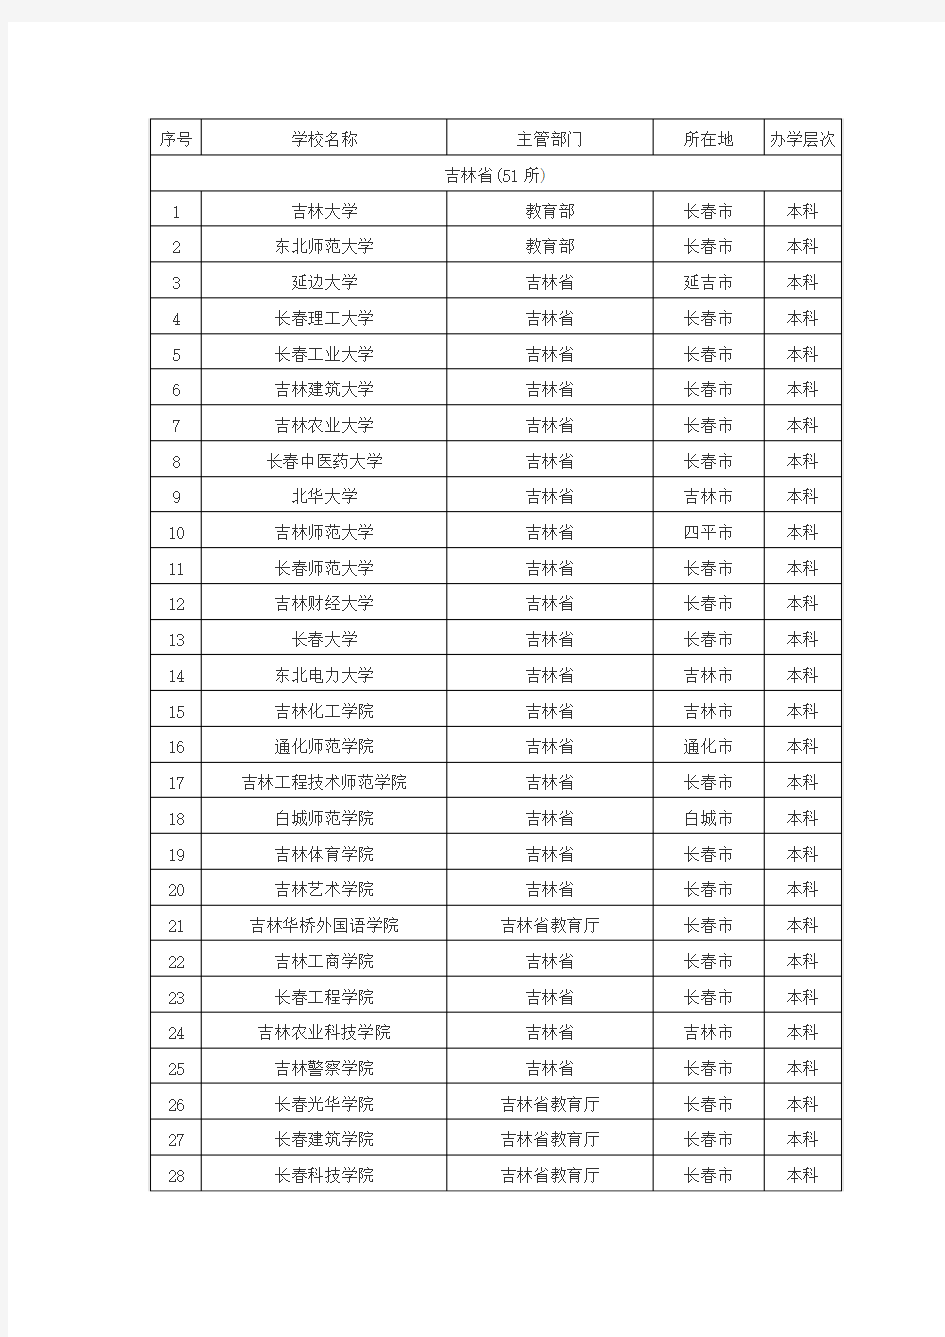 吉林省普通高校名单(51所)